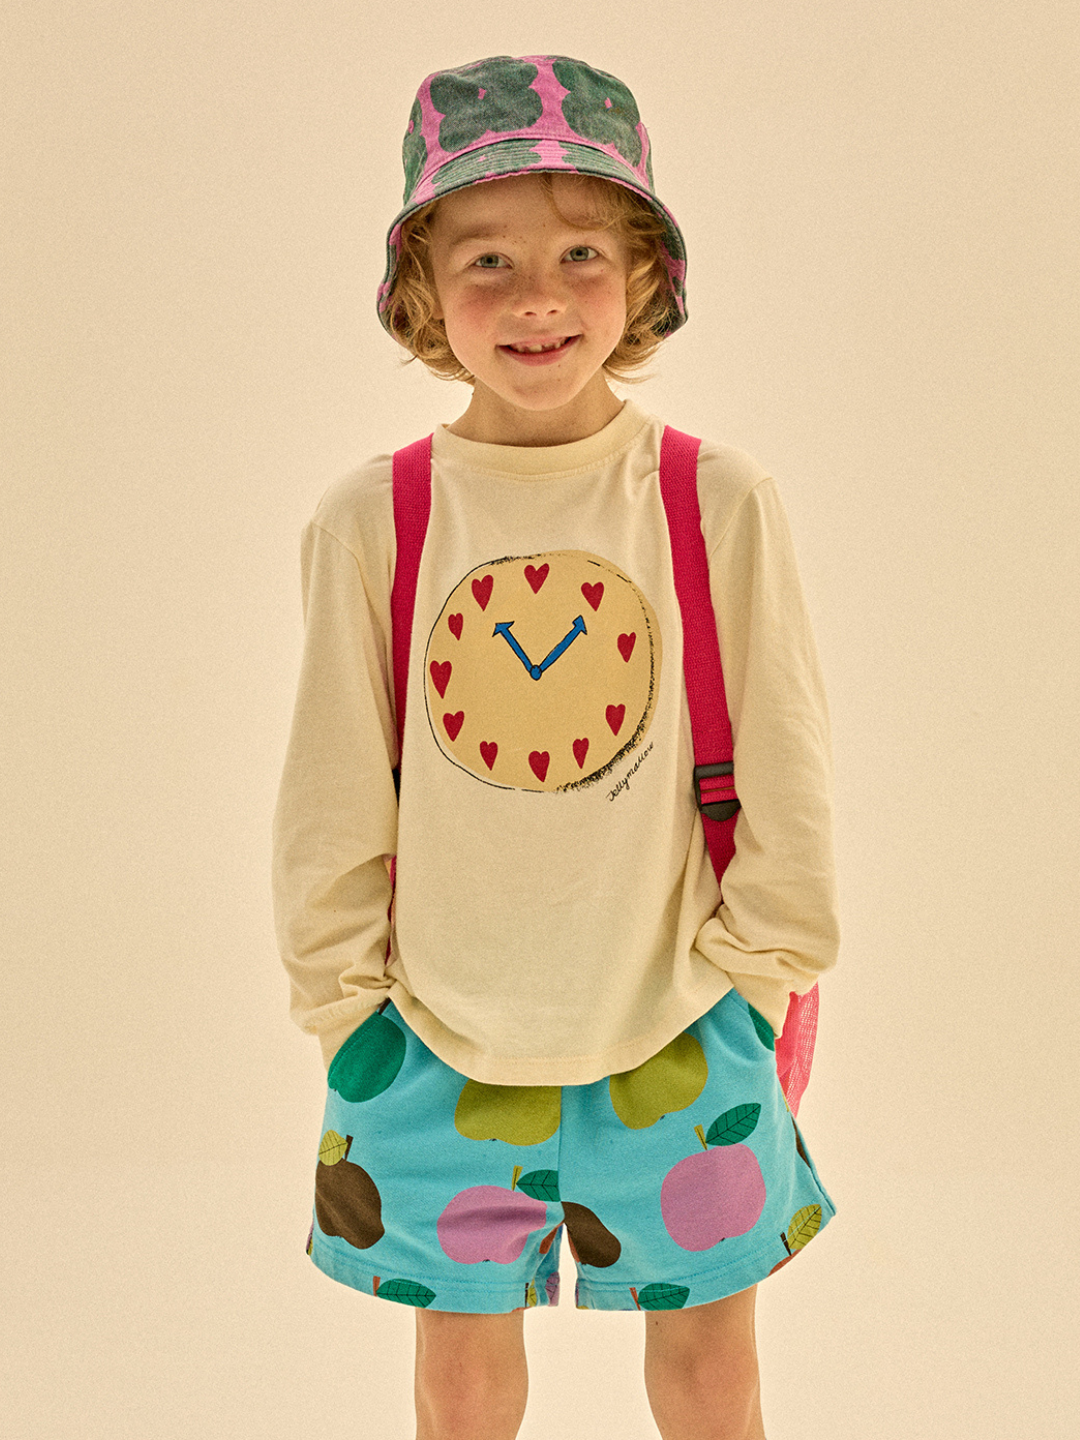 Child wearing Clover Bucket Hat